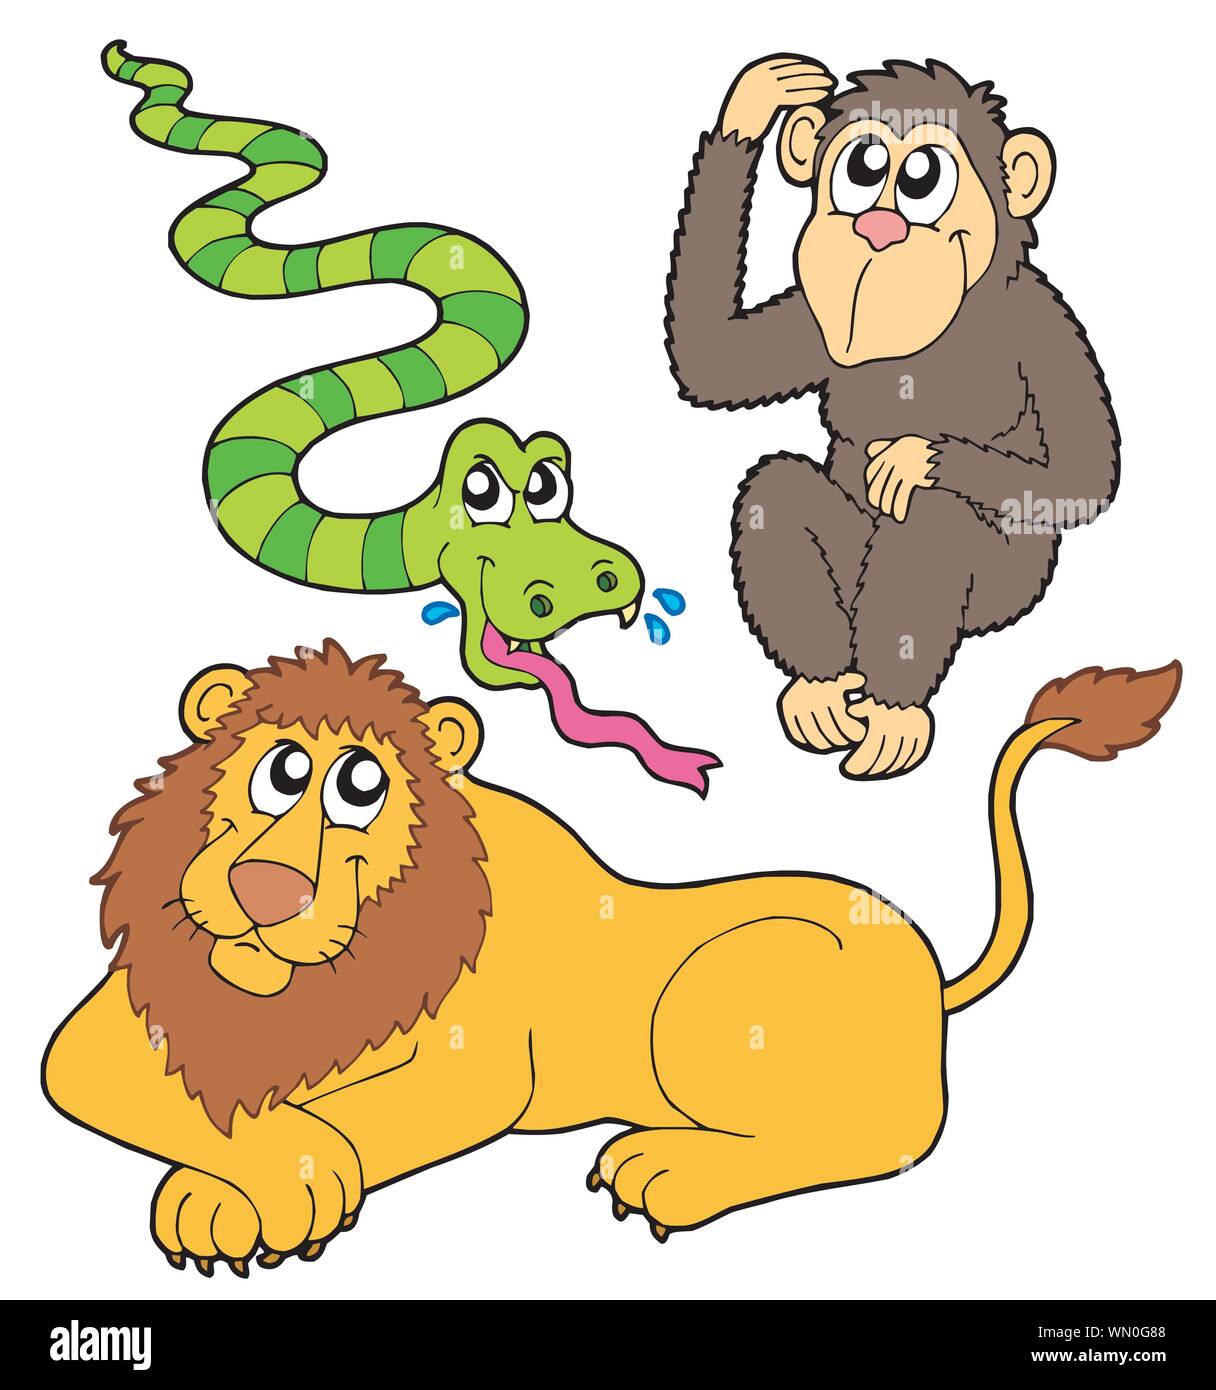 Гороскоп обезьяны льва. Лев и обезьянка. Картина обезьянки и змея.